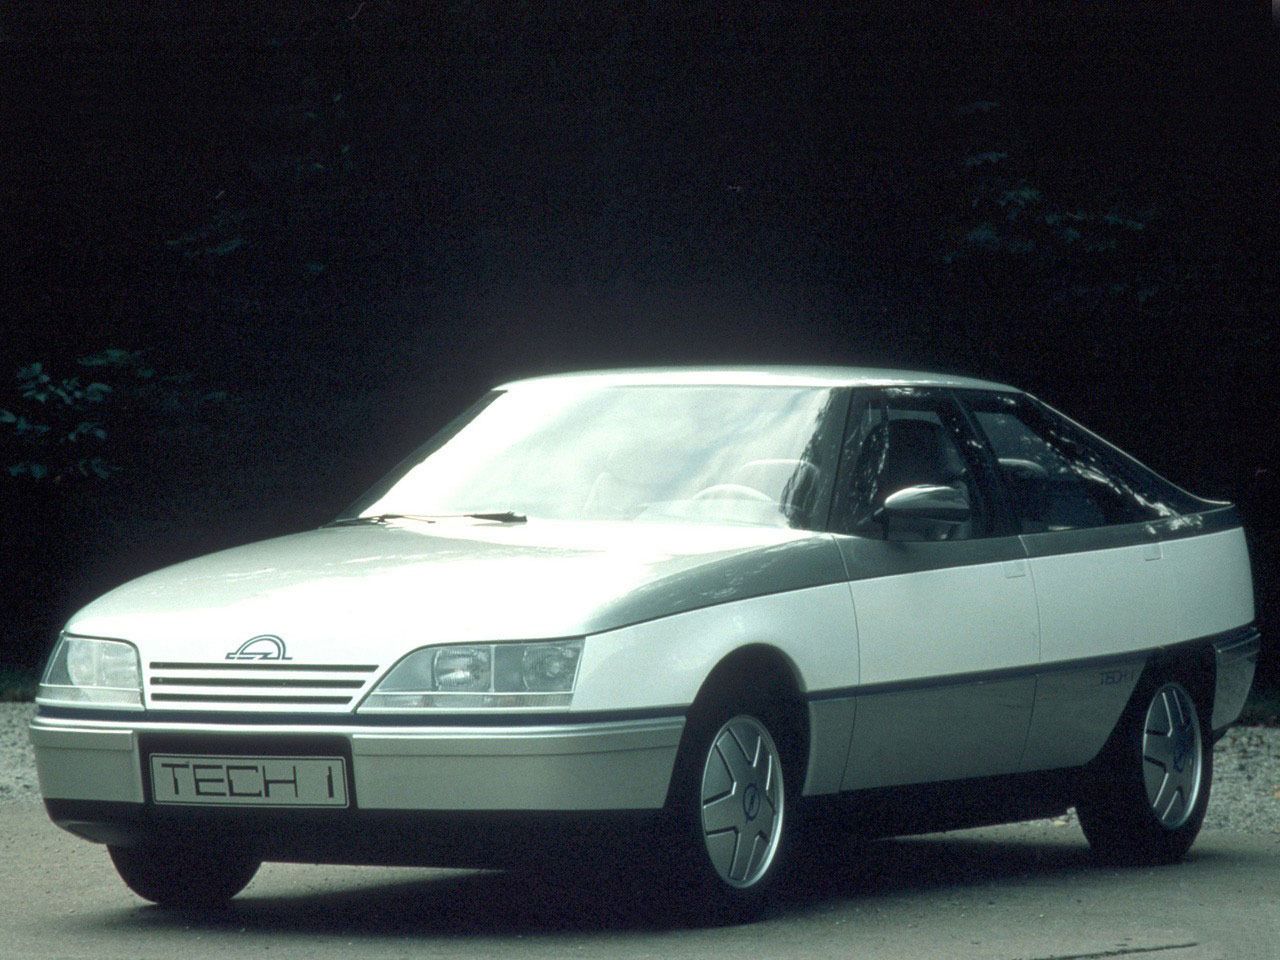 El primer proyecto de Bangle en Opel fue el prototipo Tech 1 Concept